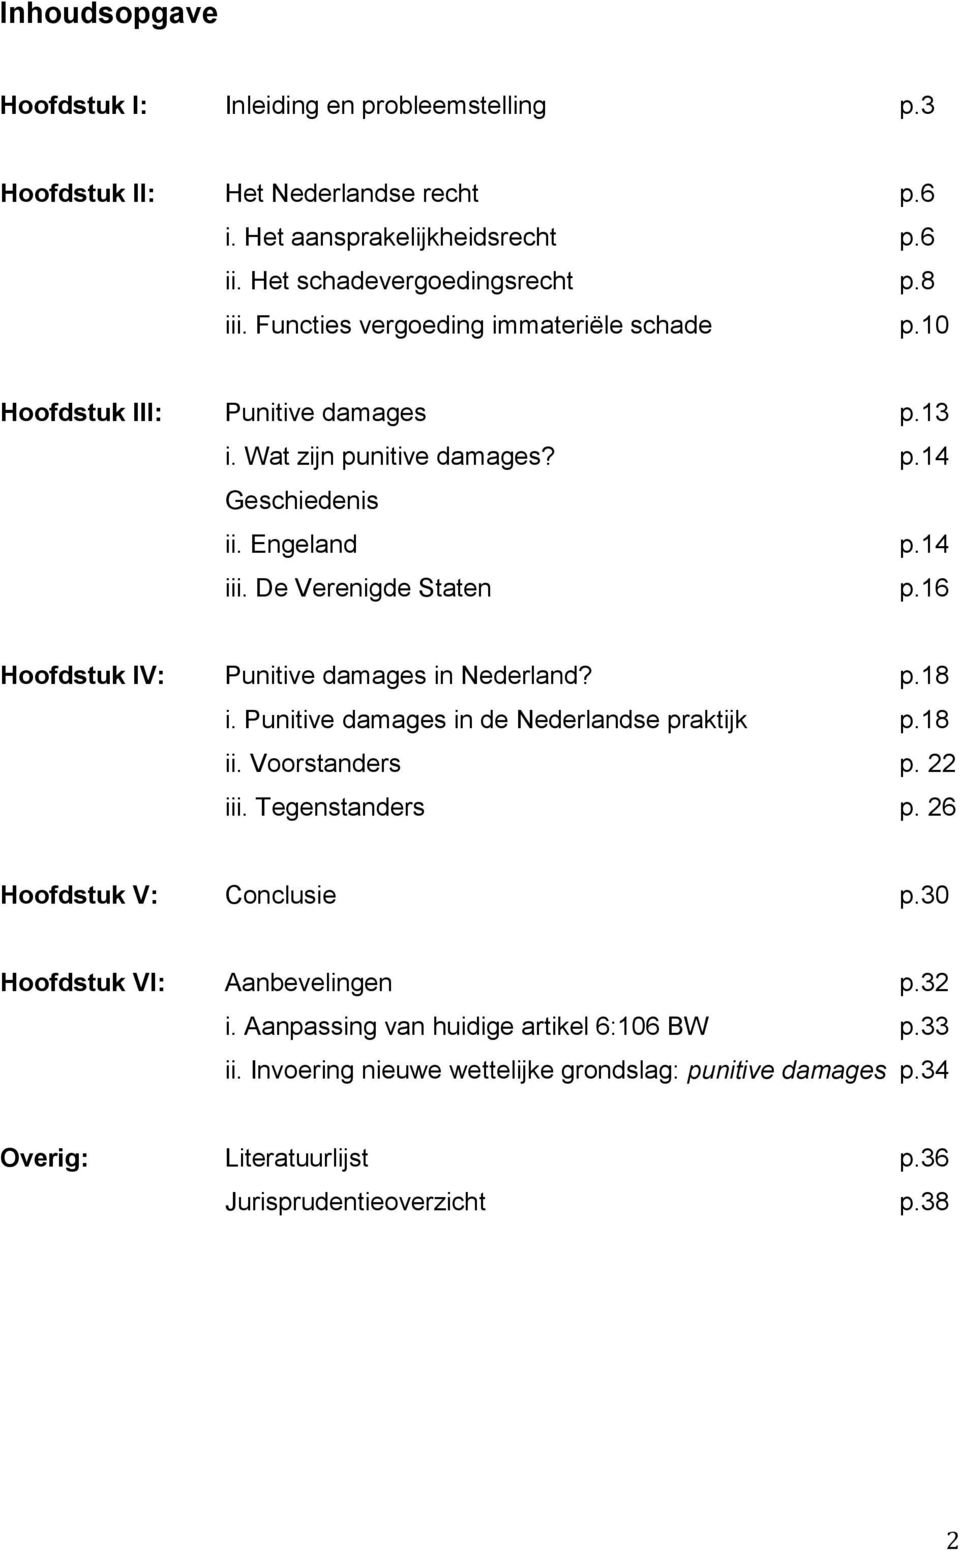 16 Hoofdstuk IV: Punitive damages in Nederland? p.18 i. Punitive damages in de Nederlandse praktijk p.18 ii. Voorstanders p. 22 iii. Tegenstanders p. 26 Hoofdstuk V: Conclusie p.